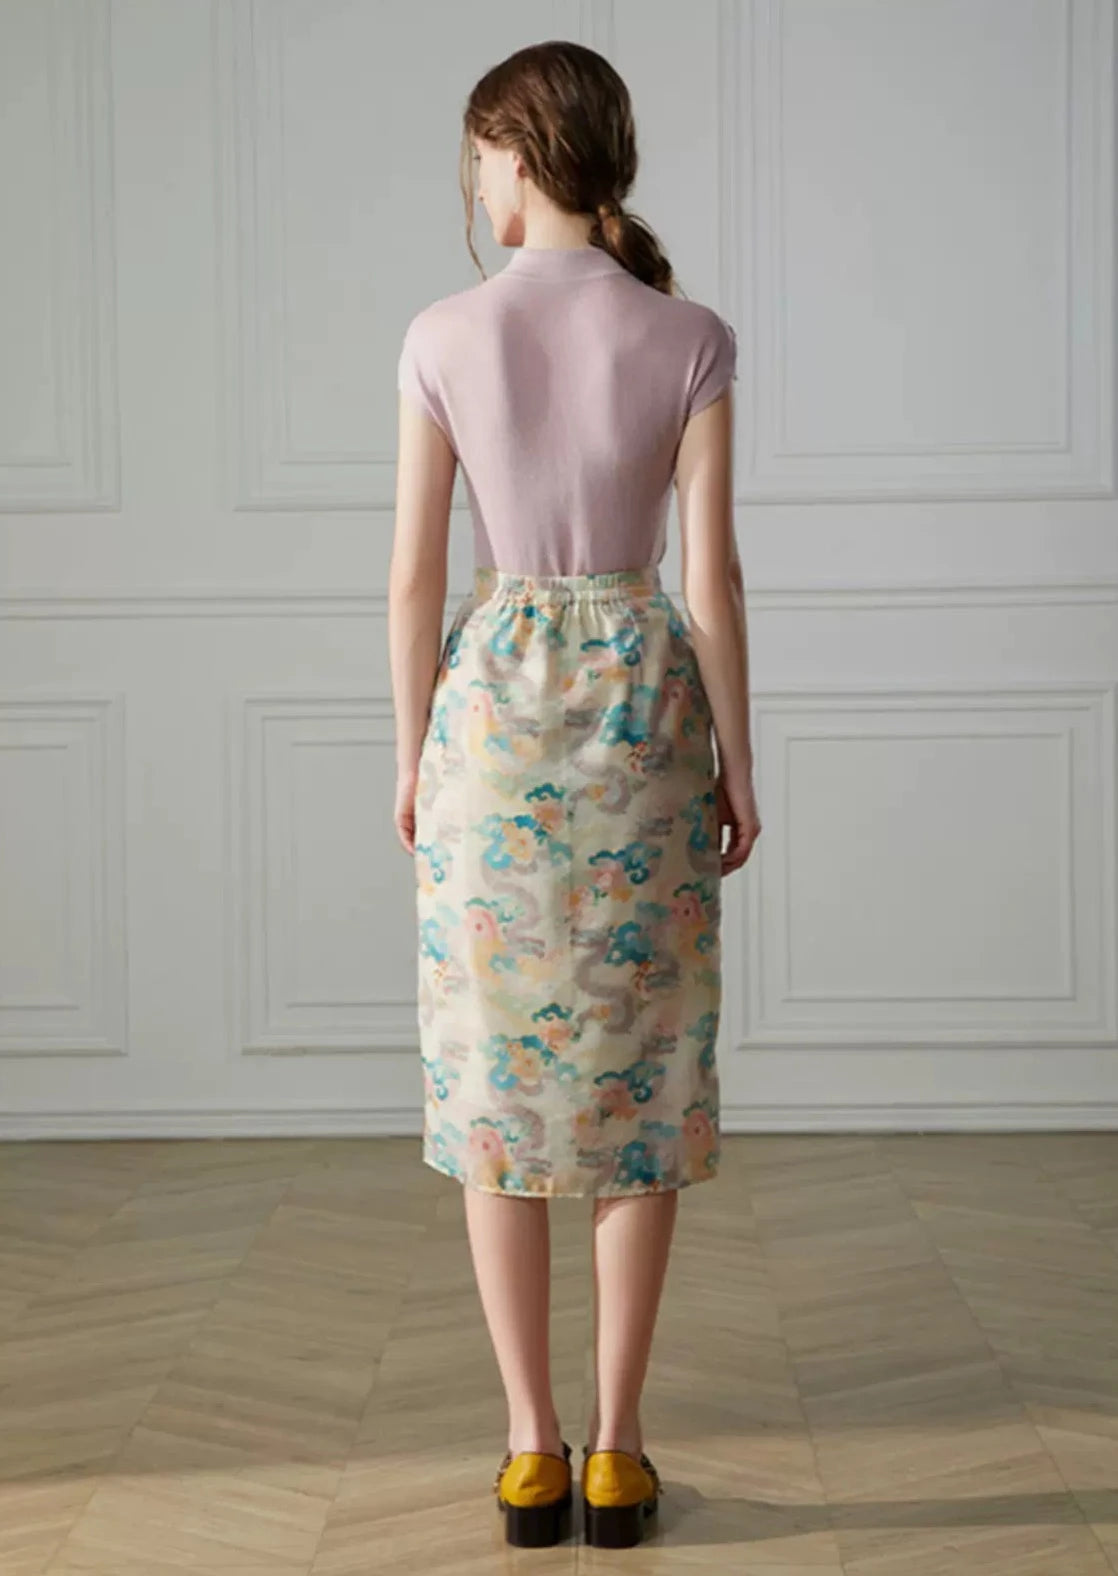 stand cut flower bud skirt 